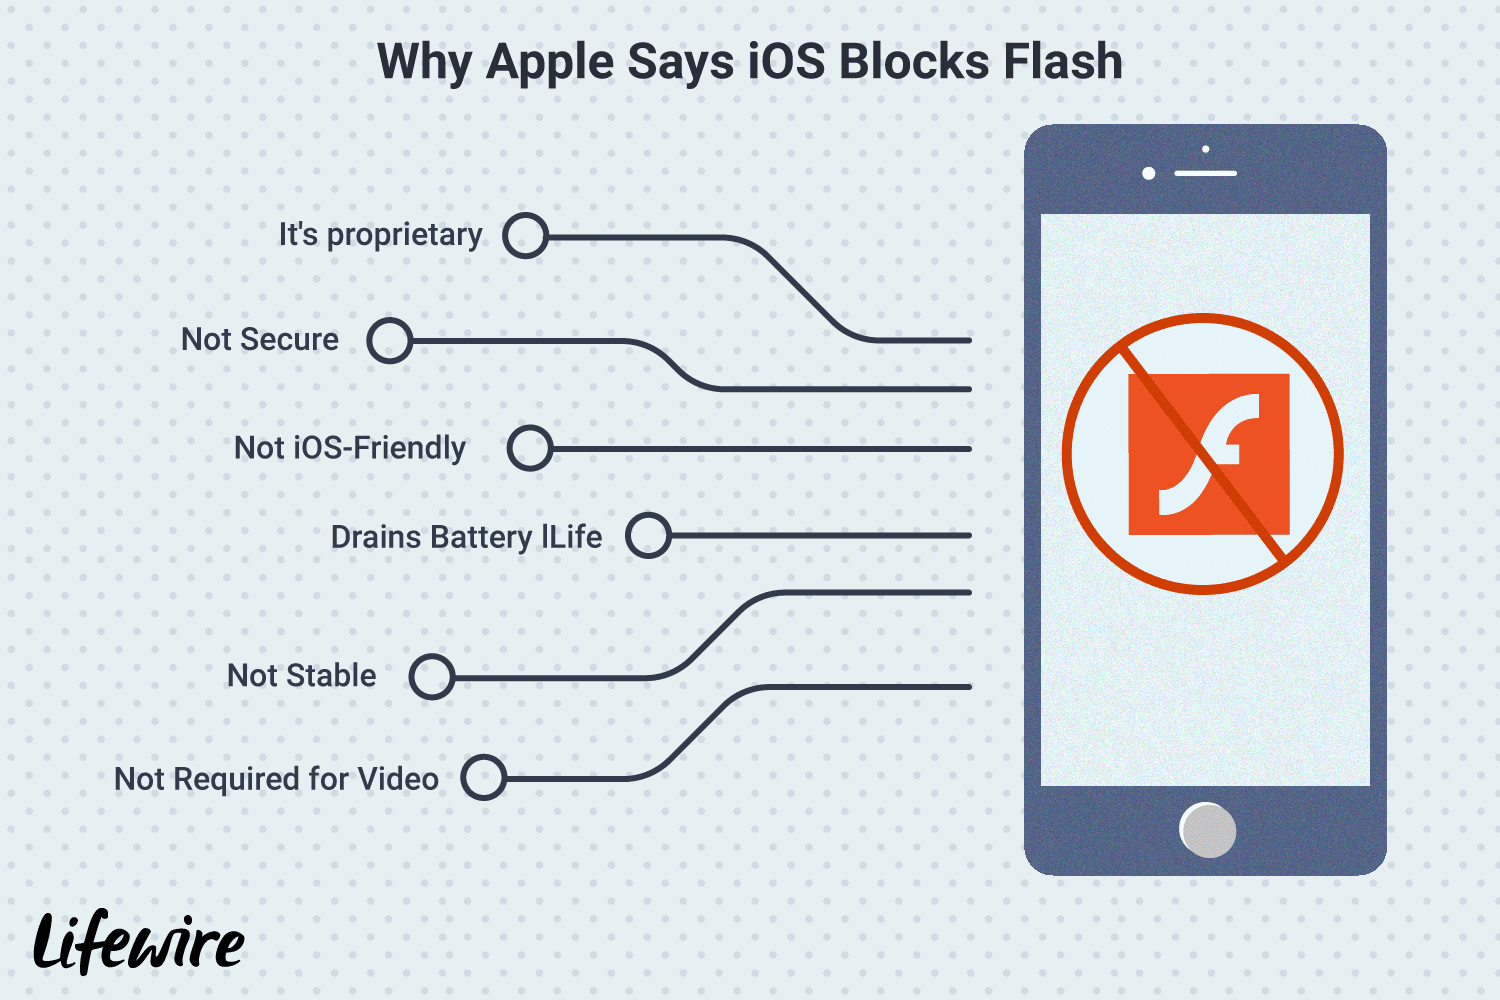 Иллюстрация того, почему Apple заявляет, что iOS блокирует Adobe Flash Player